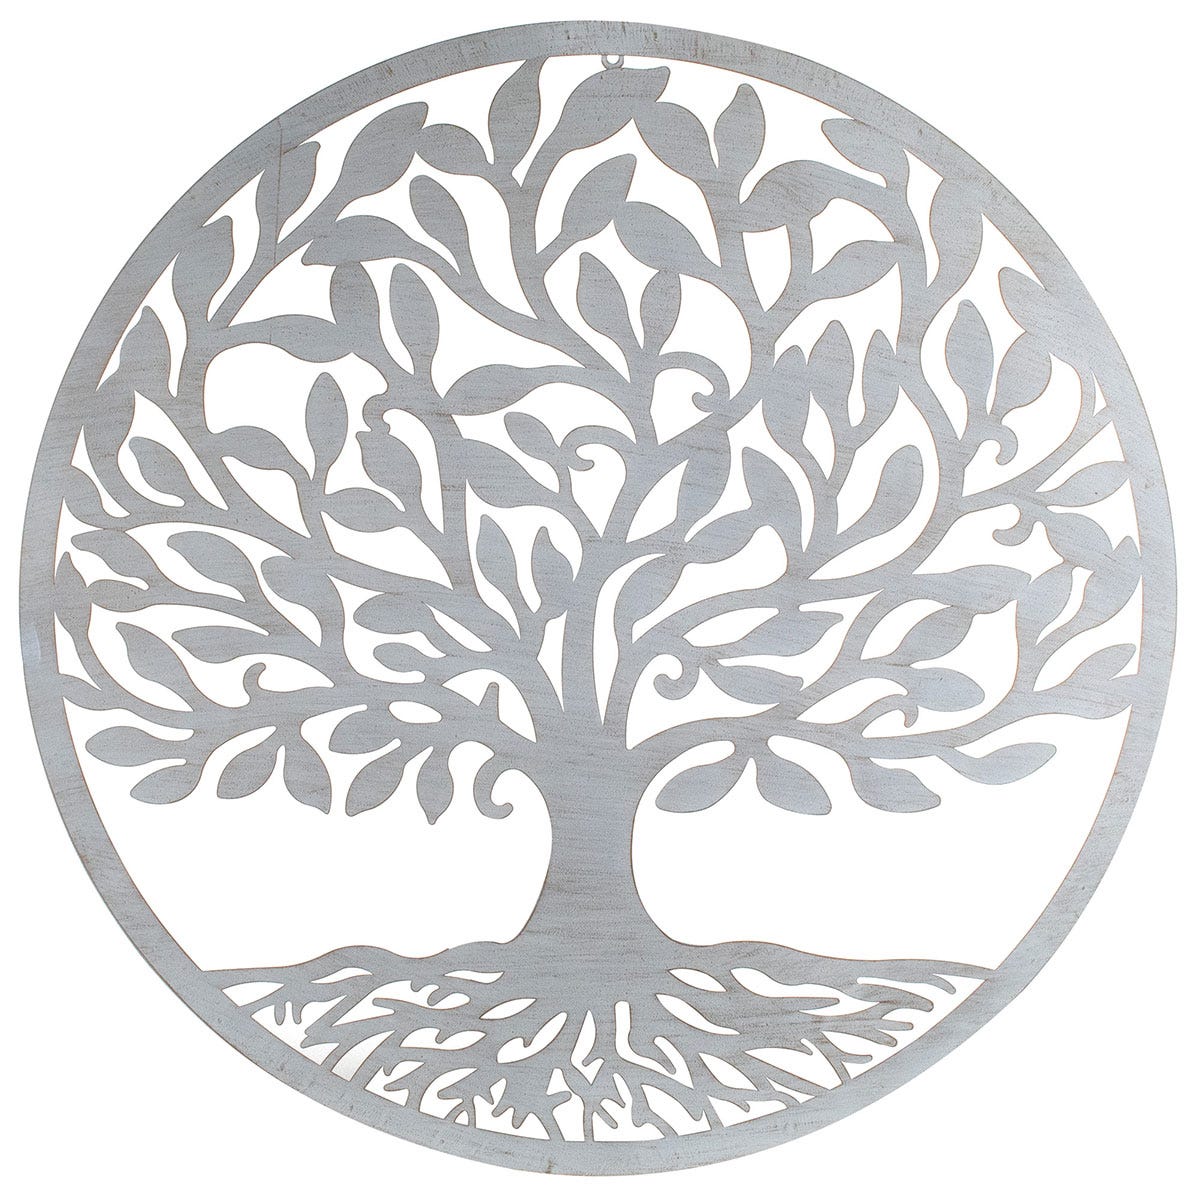 Adorno pared metálico árbol de la vida -Paneles Decorativos